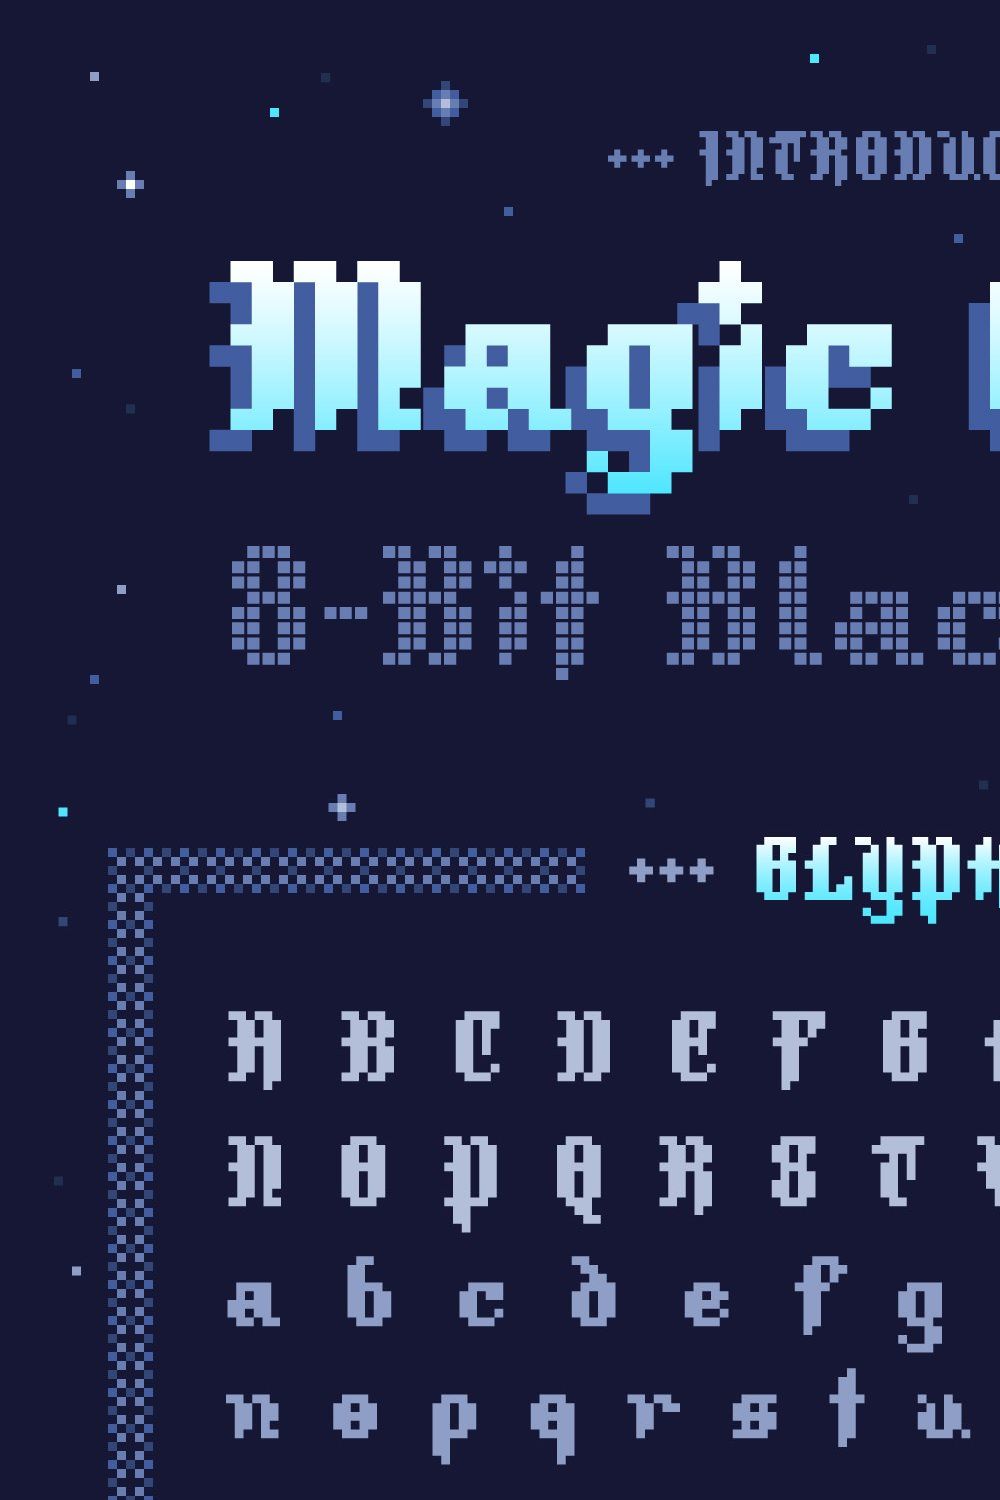 Magic Quest - 8-Bit Blackletter pinterest preview image.